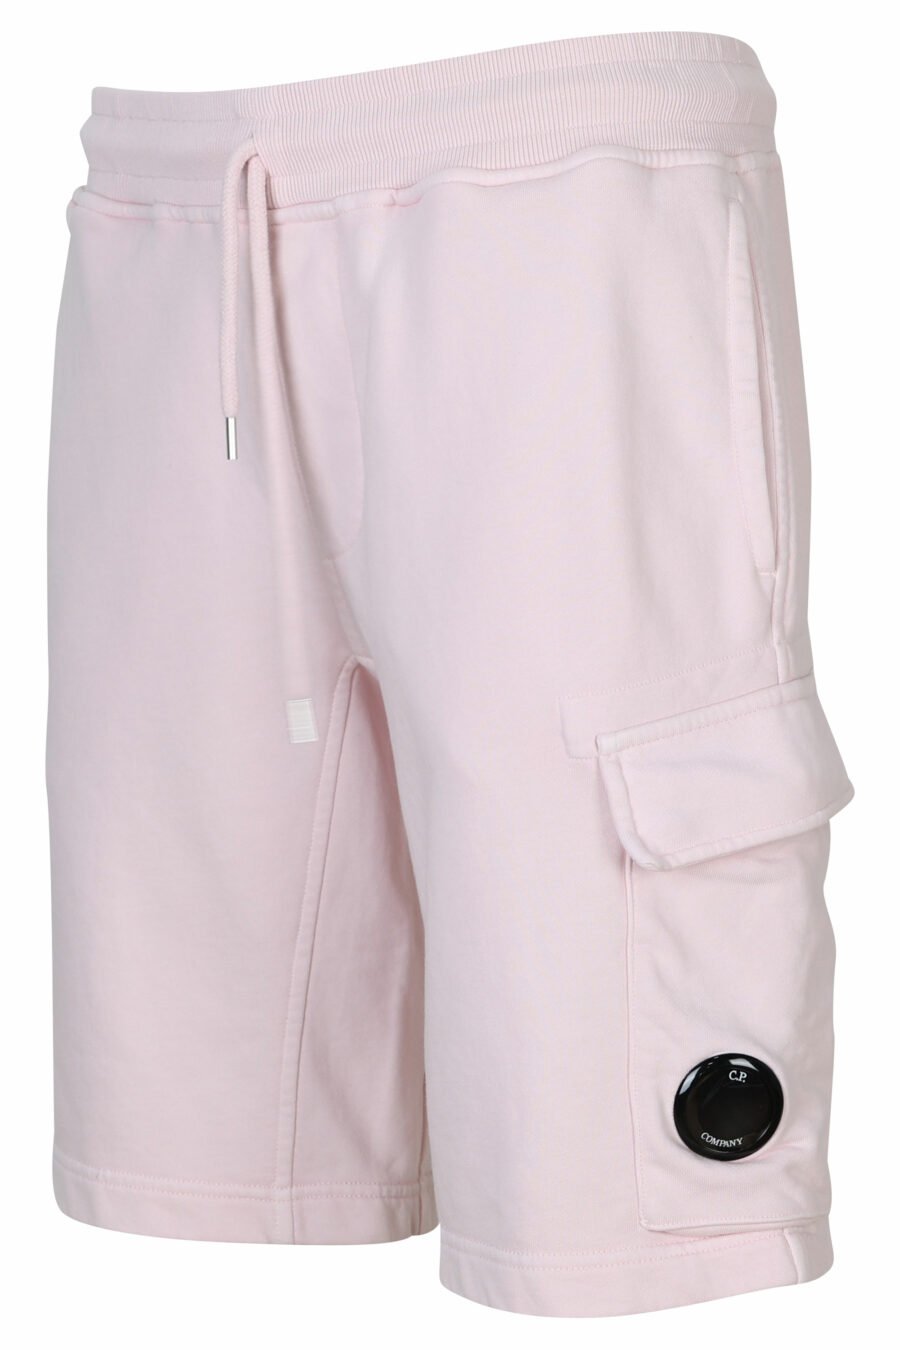 Pantalón de chándal midi rosa estilo cargo con minilogo lente - 7620943731262 1